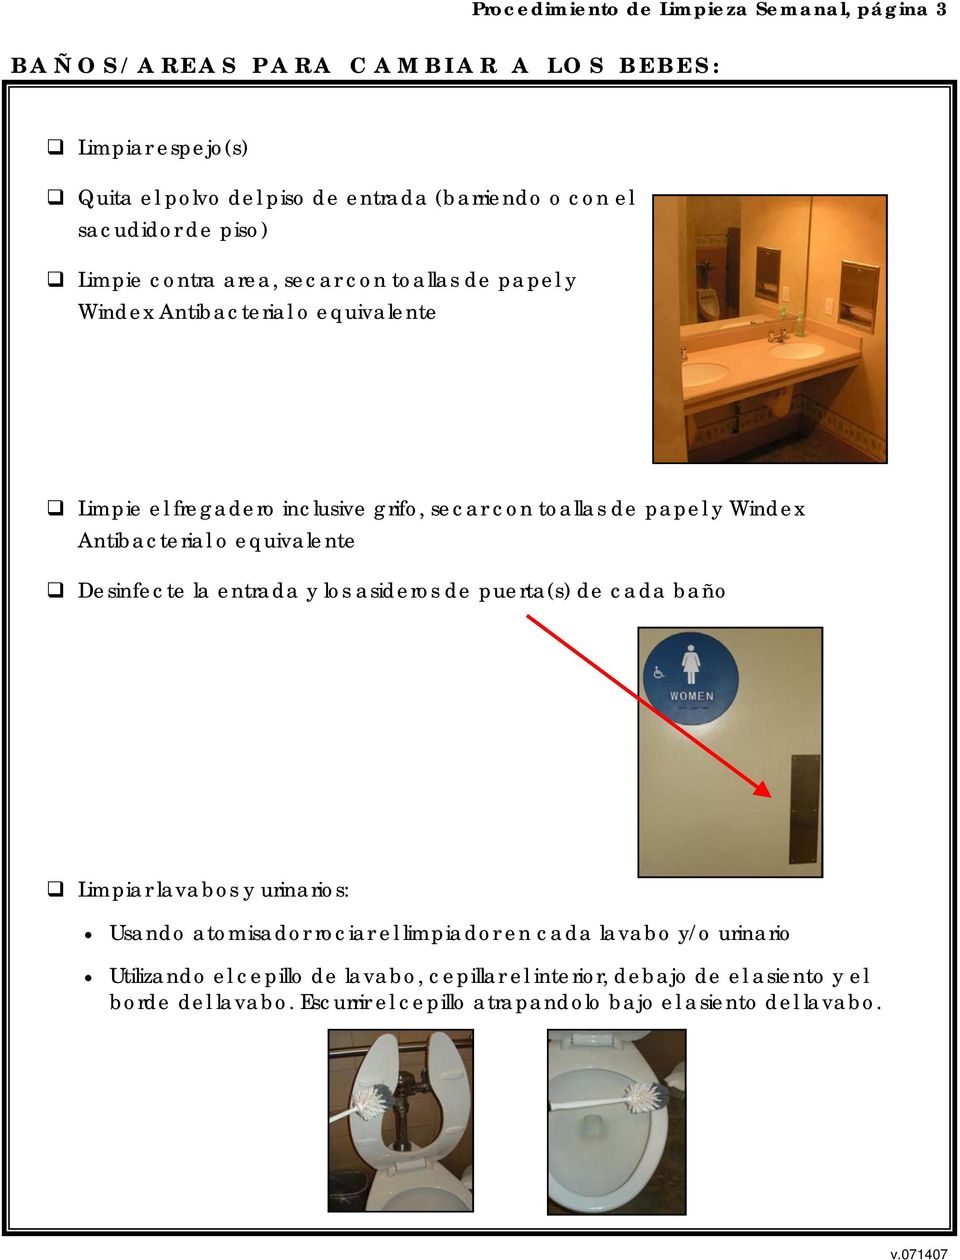 Antibacterial o equivalente Desinfecte la entrada y los asideros de puerta(s) de cada baño Limpiar lavabos y urinarios: Usando atomisador rociar el limpiador en cada